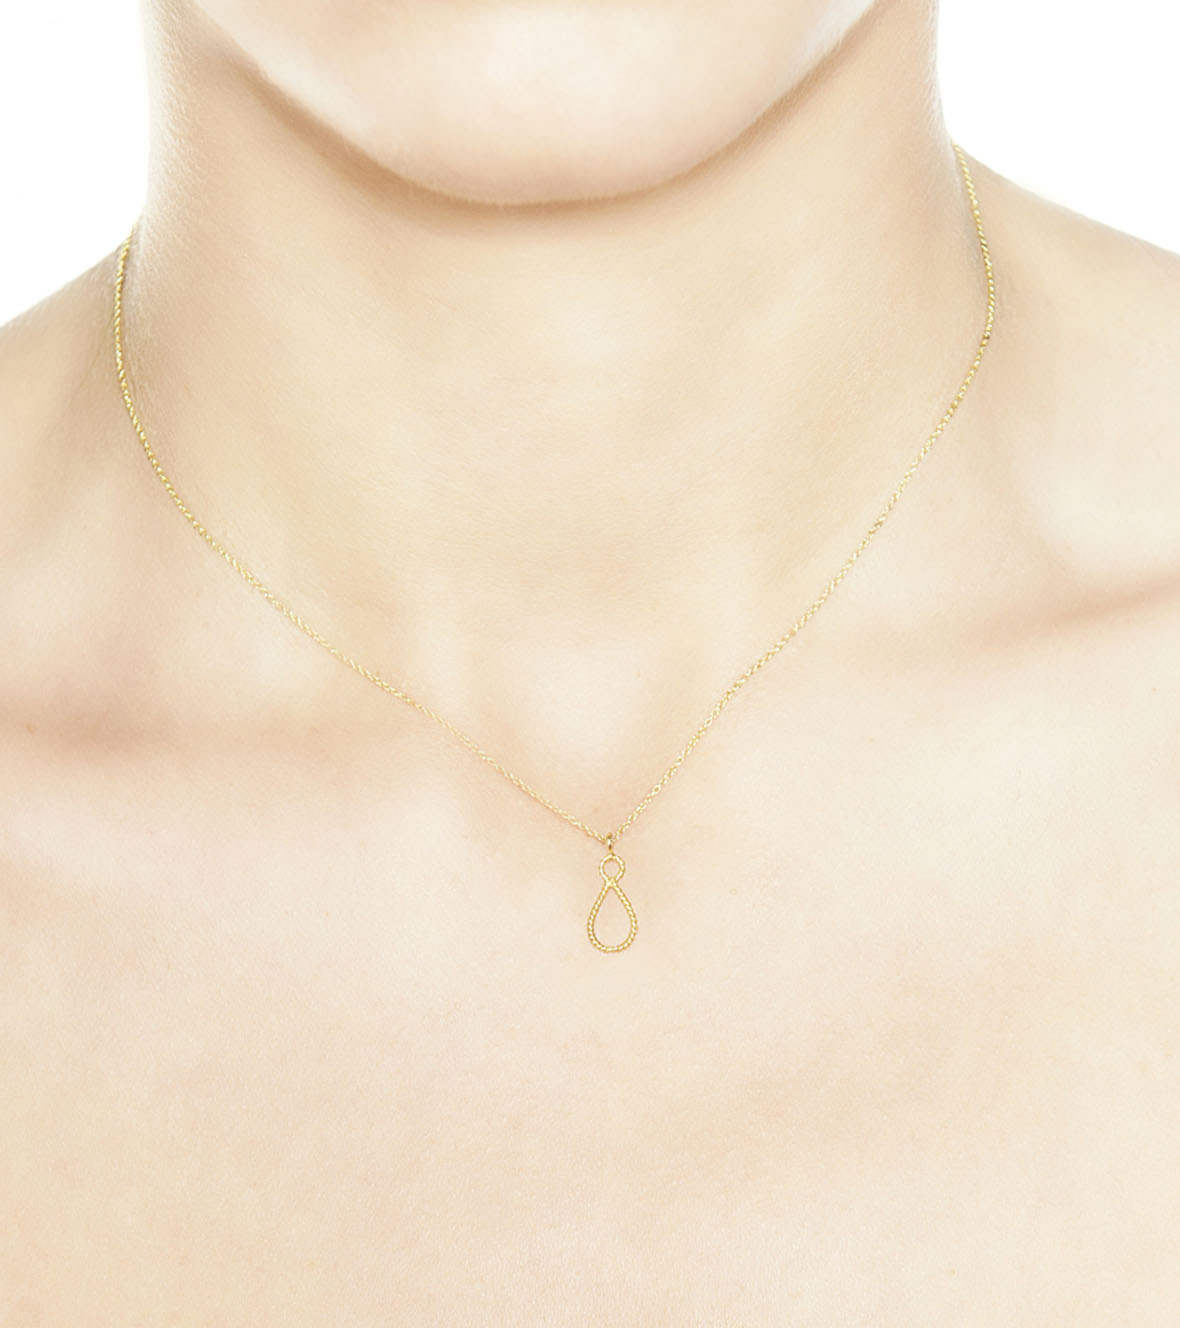 Tiny Drop pendant by Christina Soubli